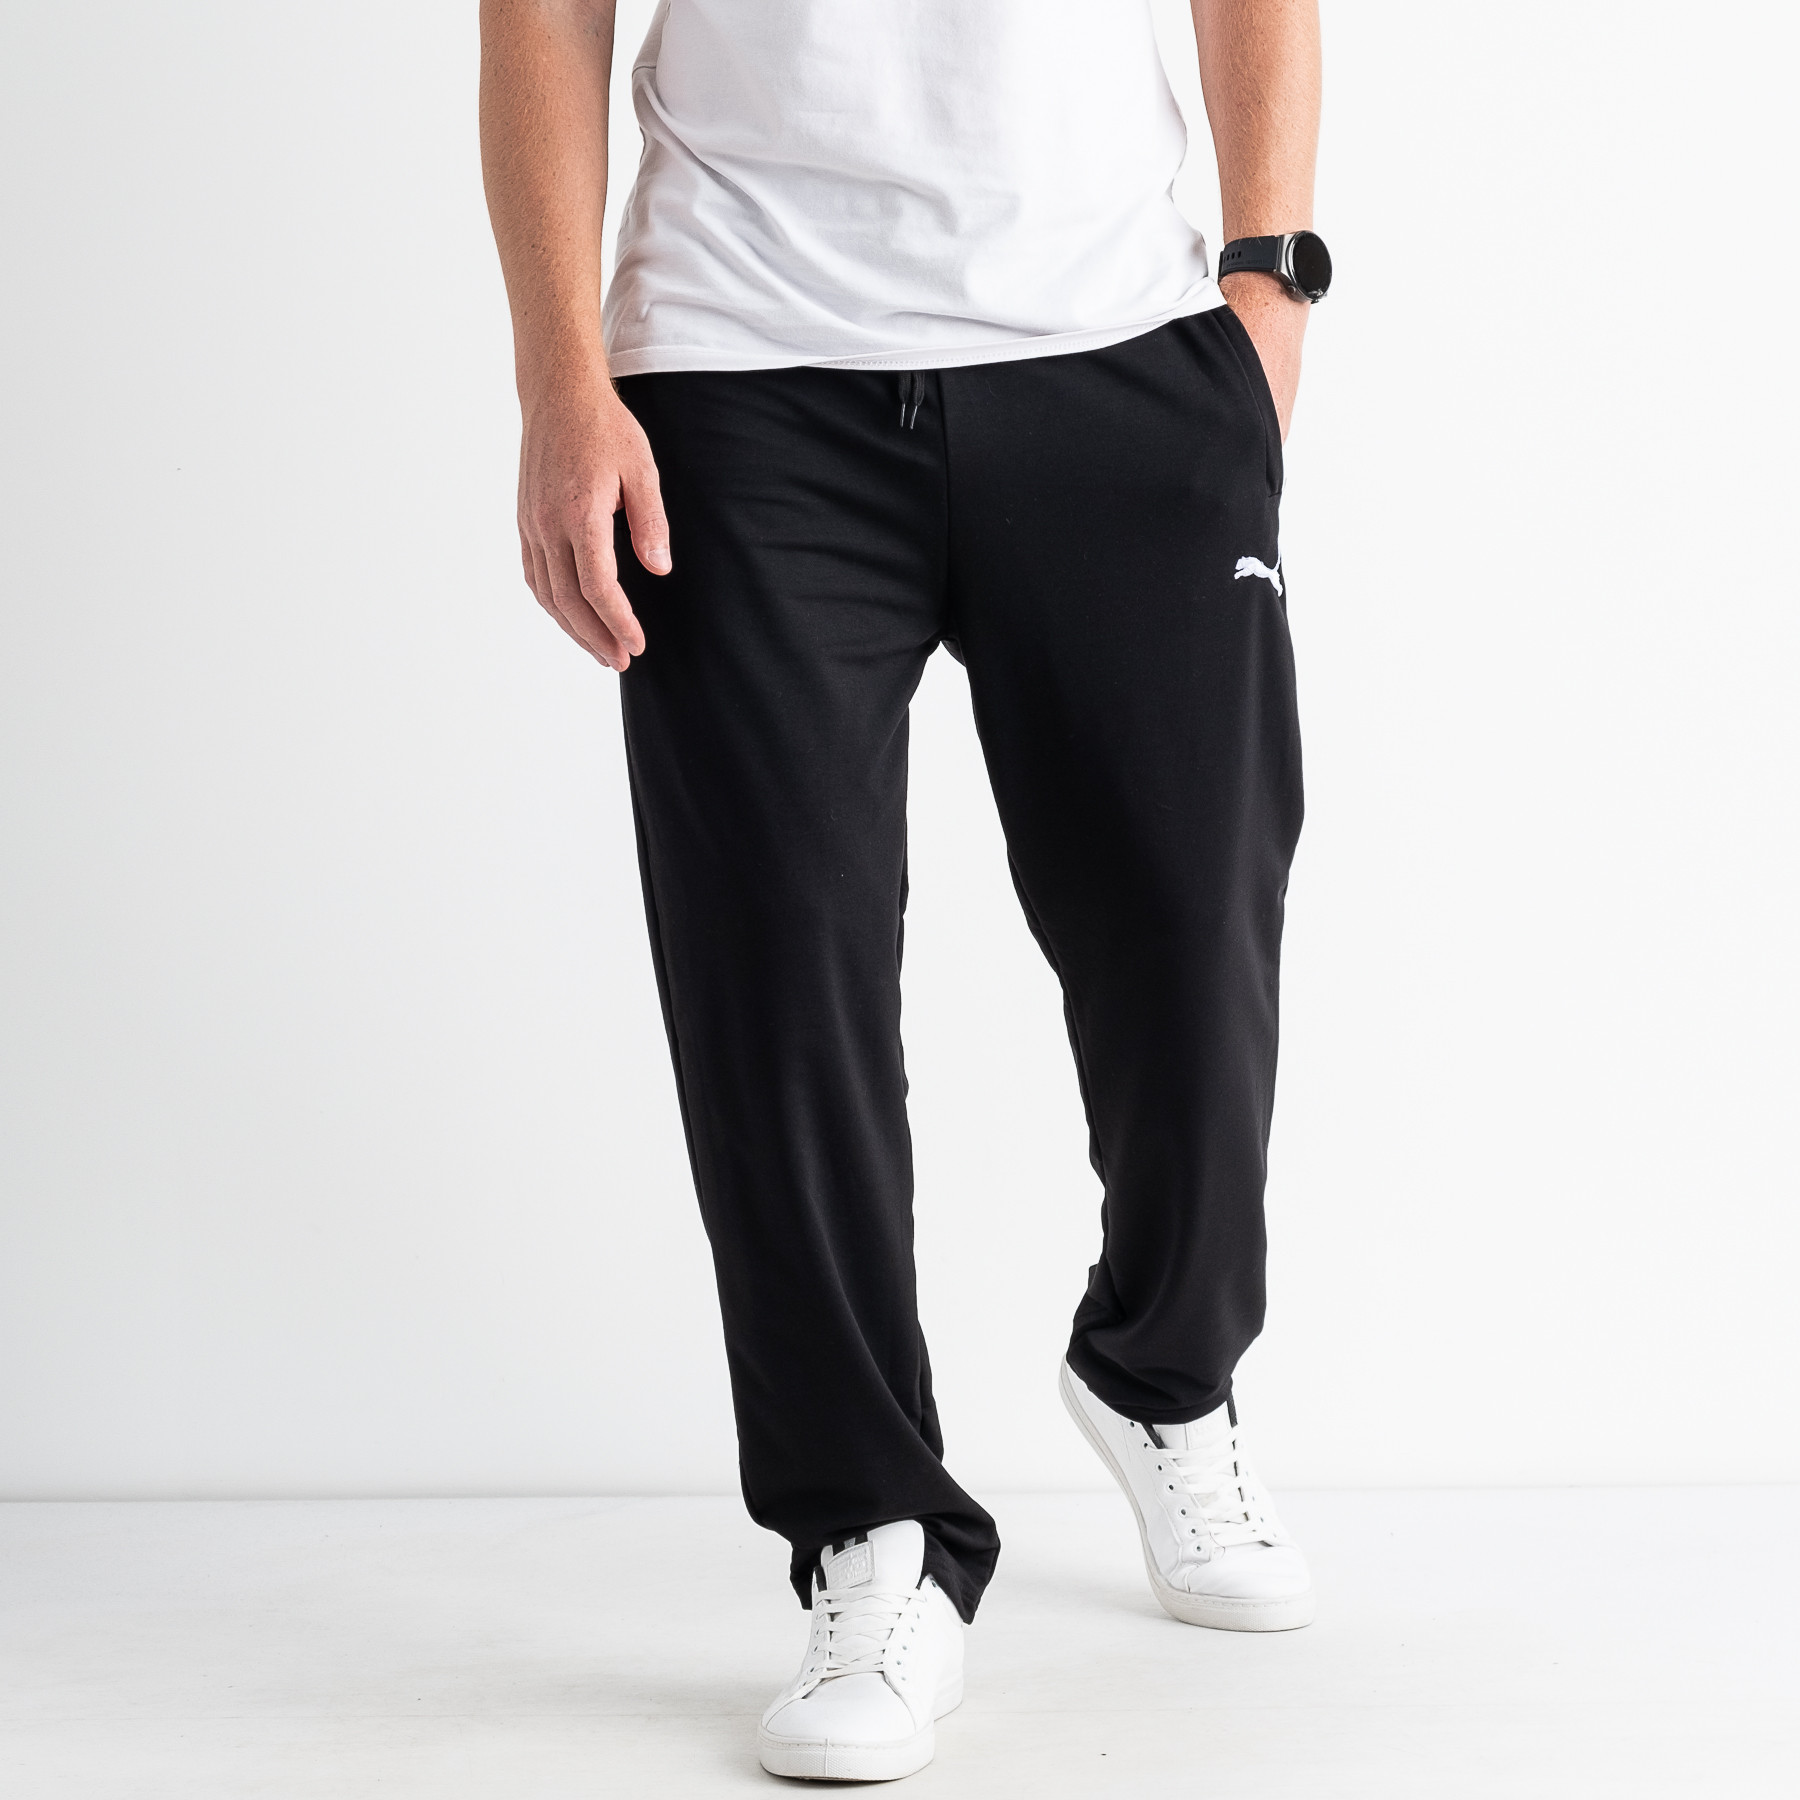 2408-1 ЧЕРНЫЕ спортивные брюки мужские батальные ( 5 ед. размеры: 56.58.60.62.64)